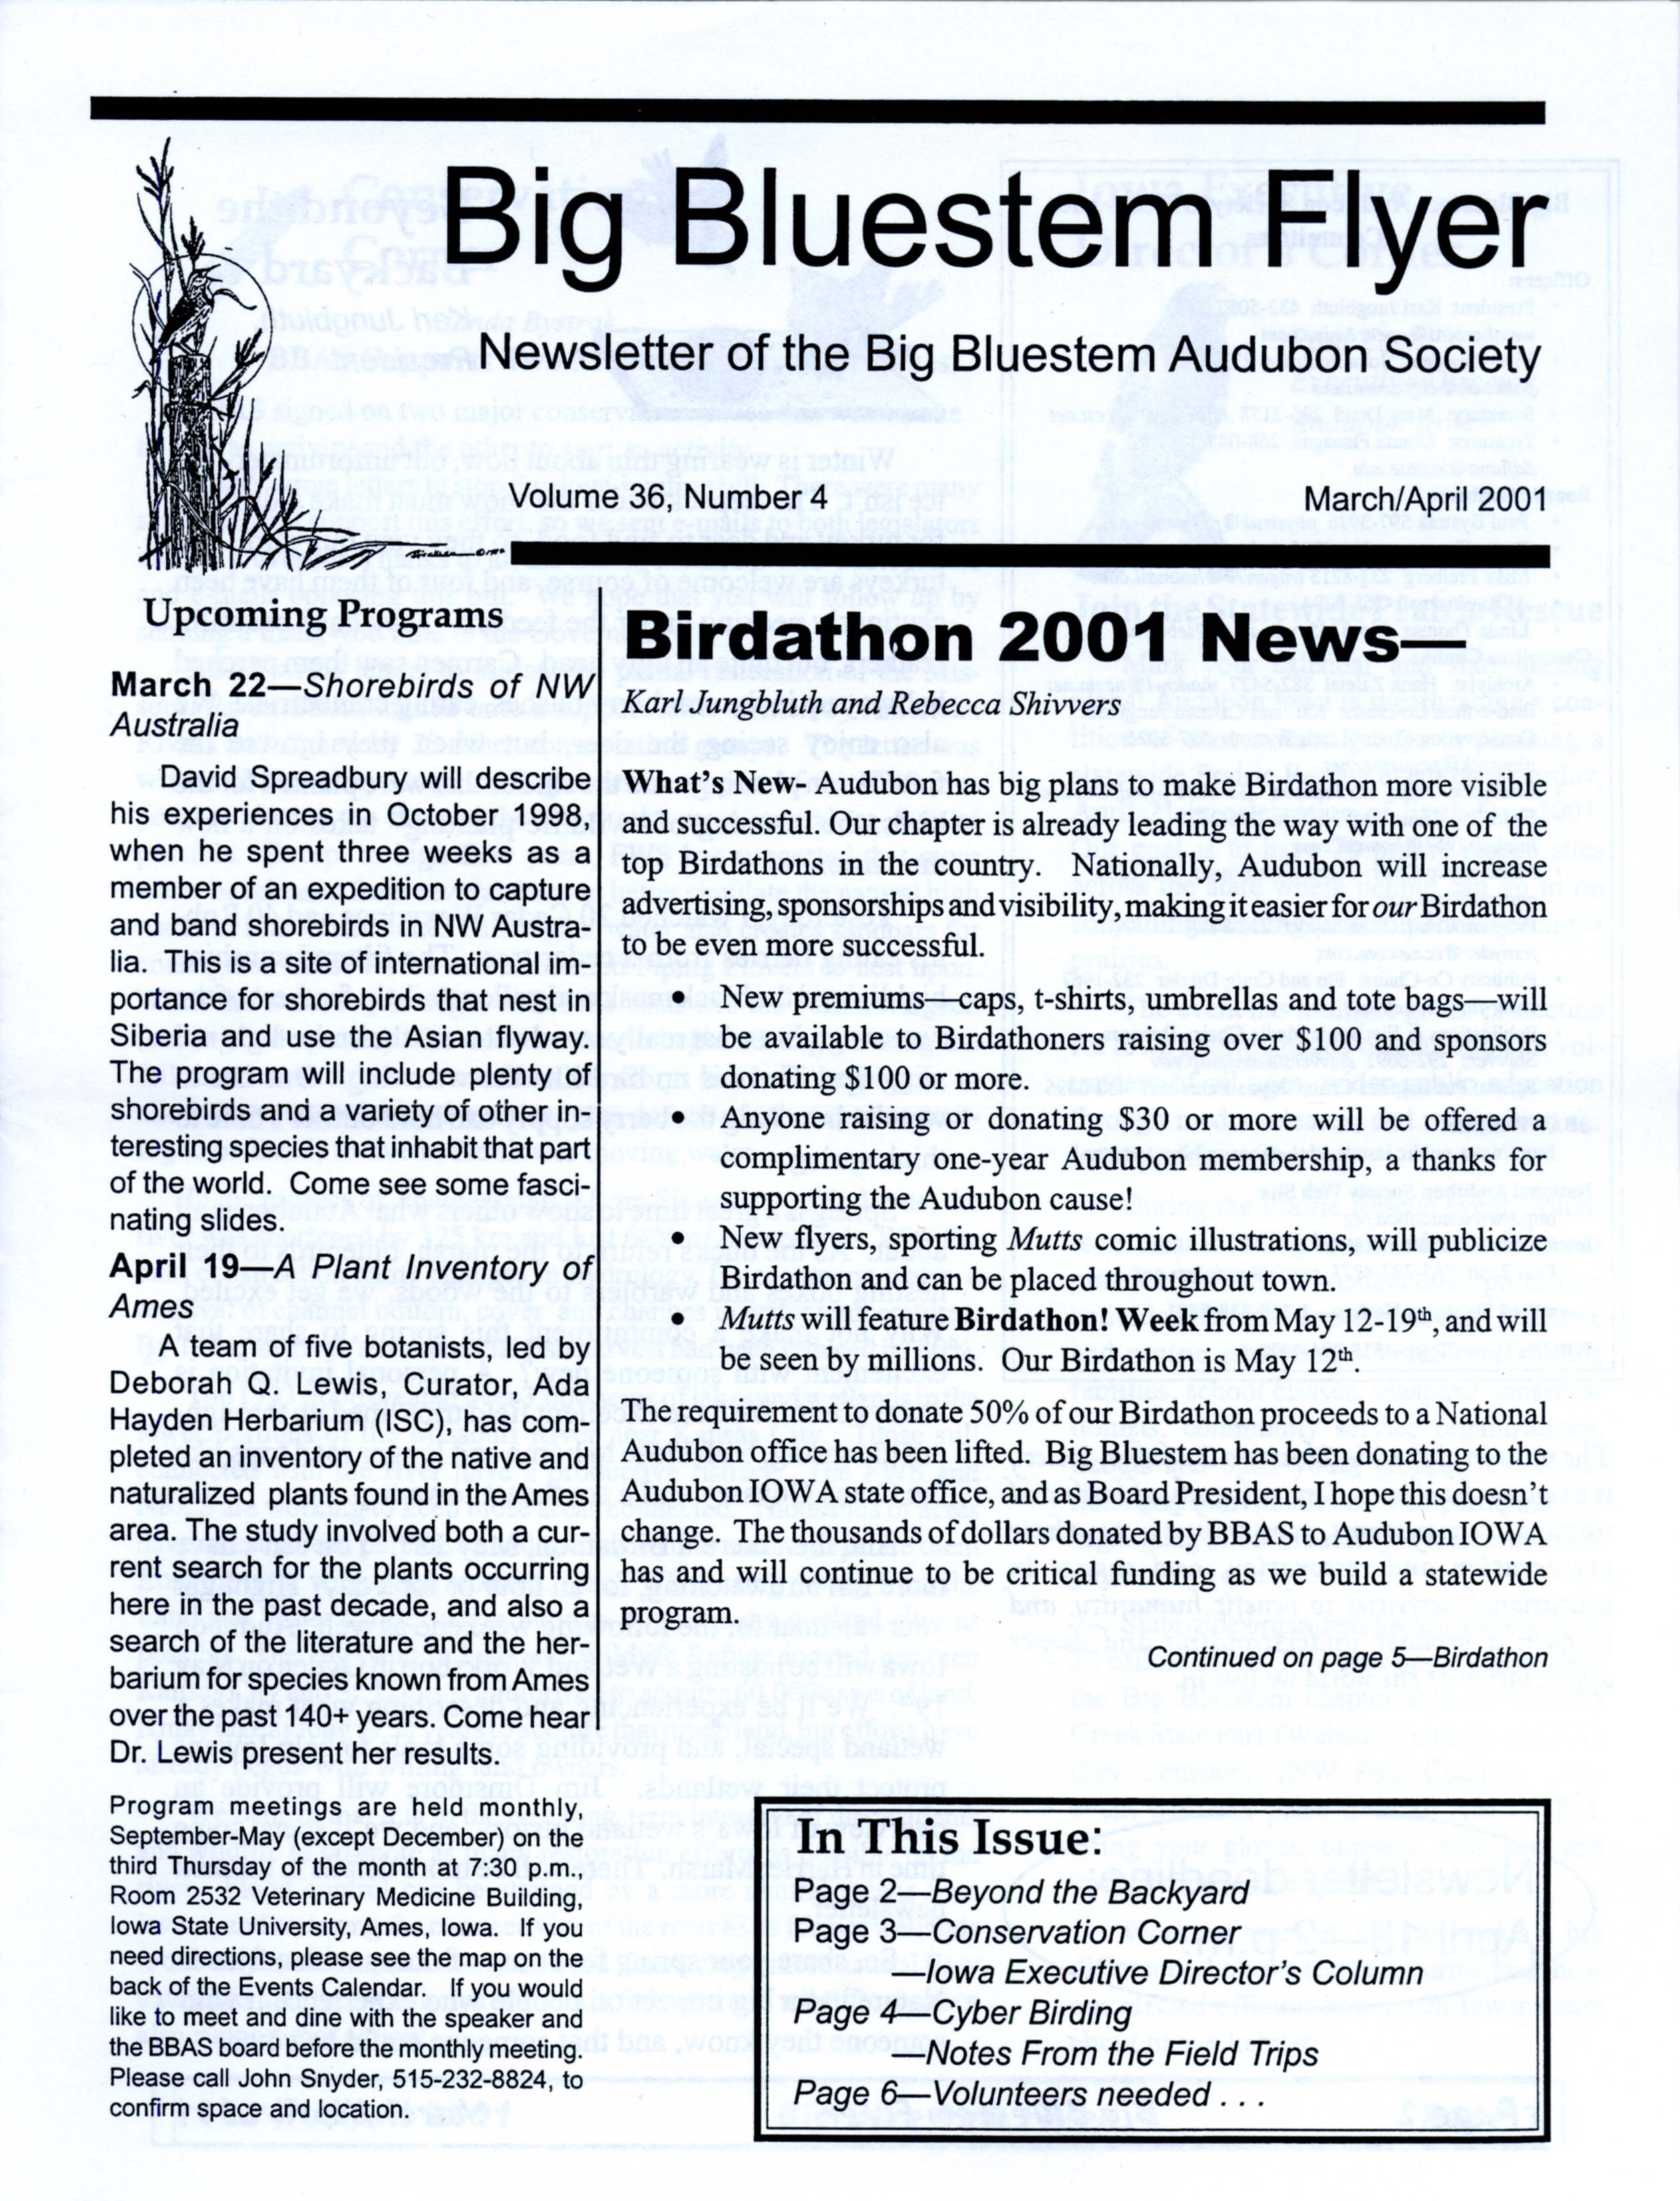 Big Bluestem Flyer, Volume 36, Number 4, March/April 2001